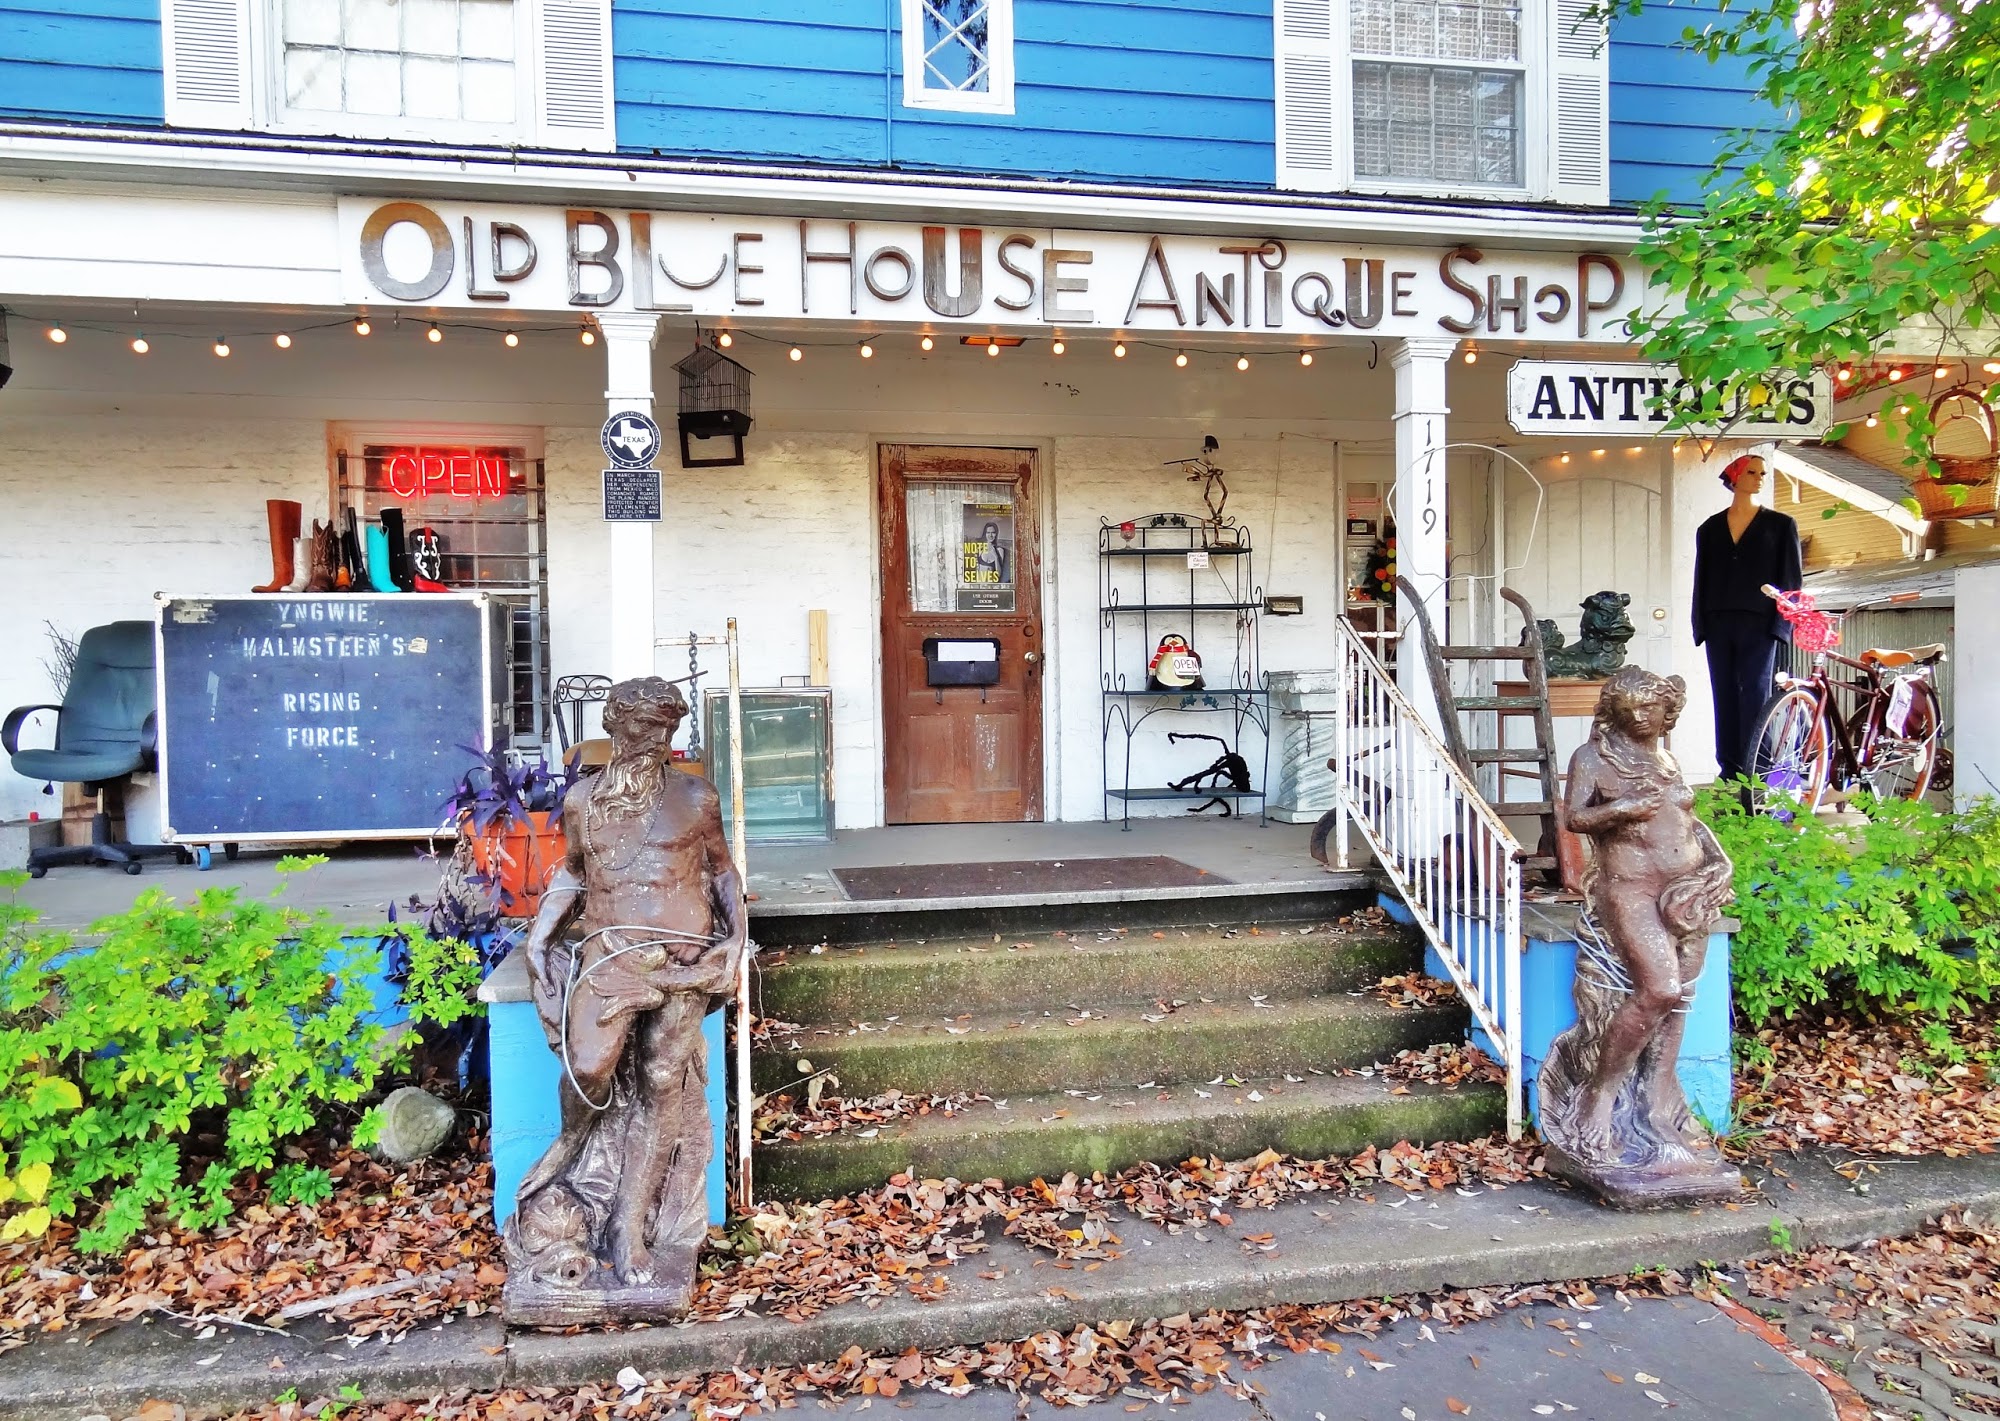 Old Blue House Antique Shop